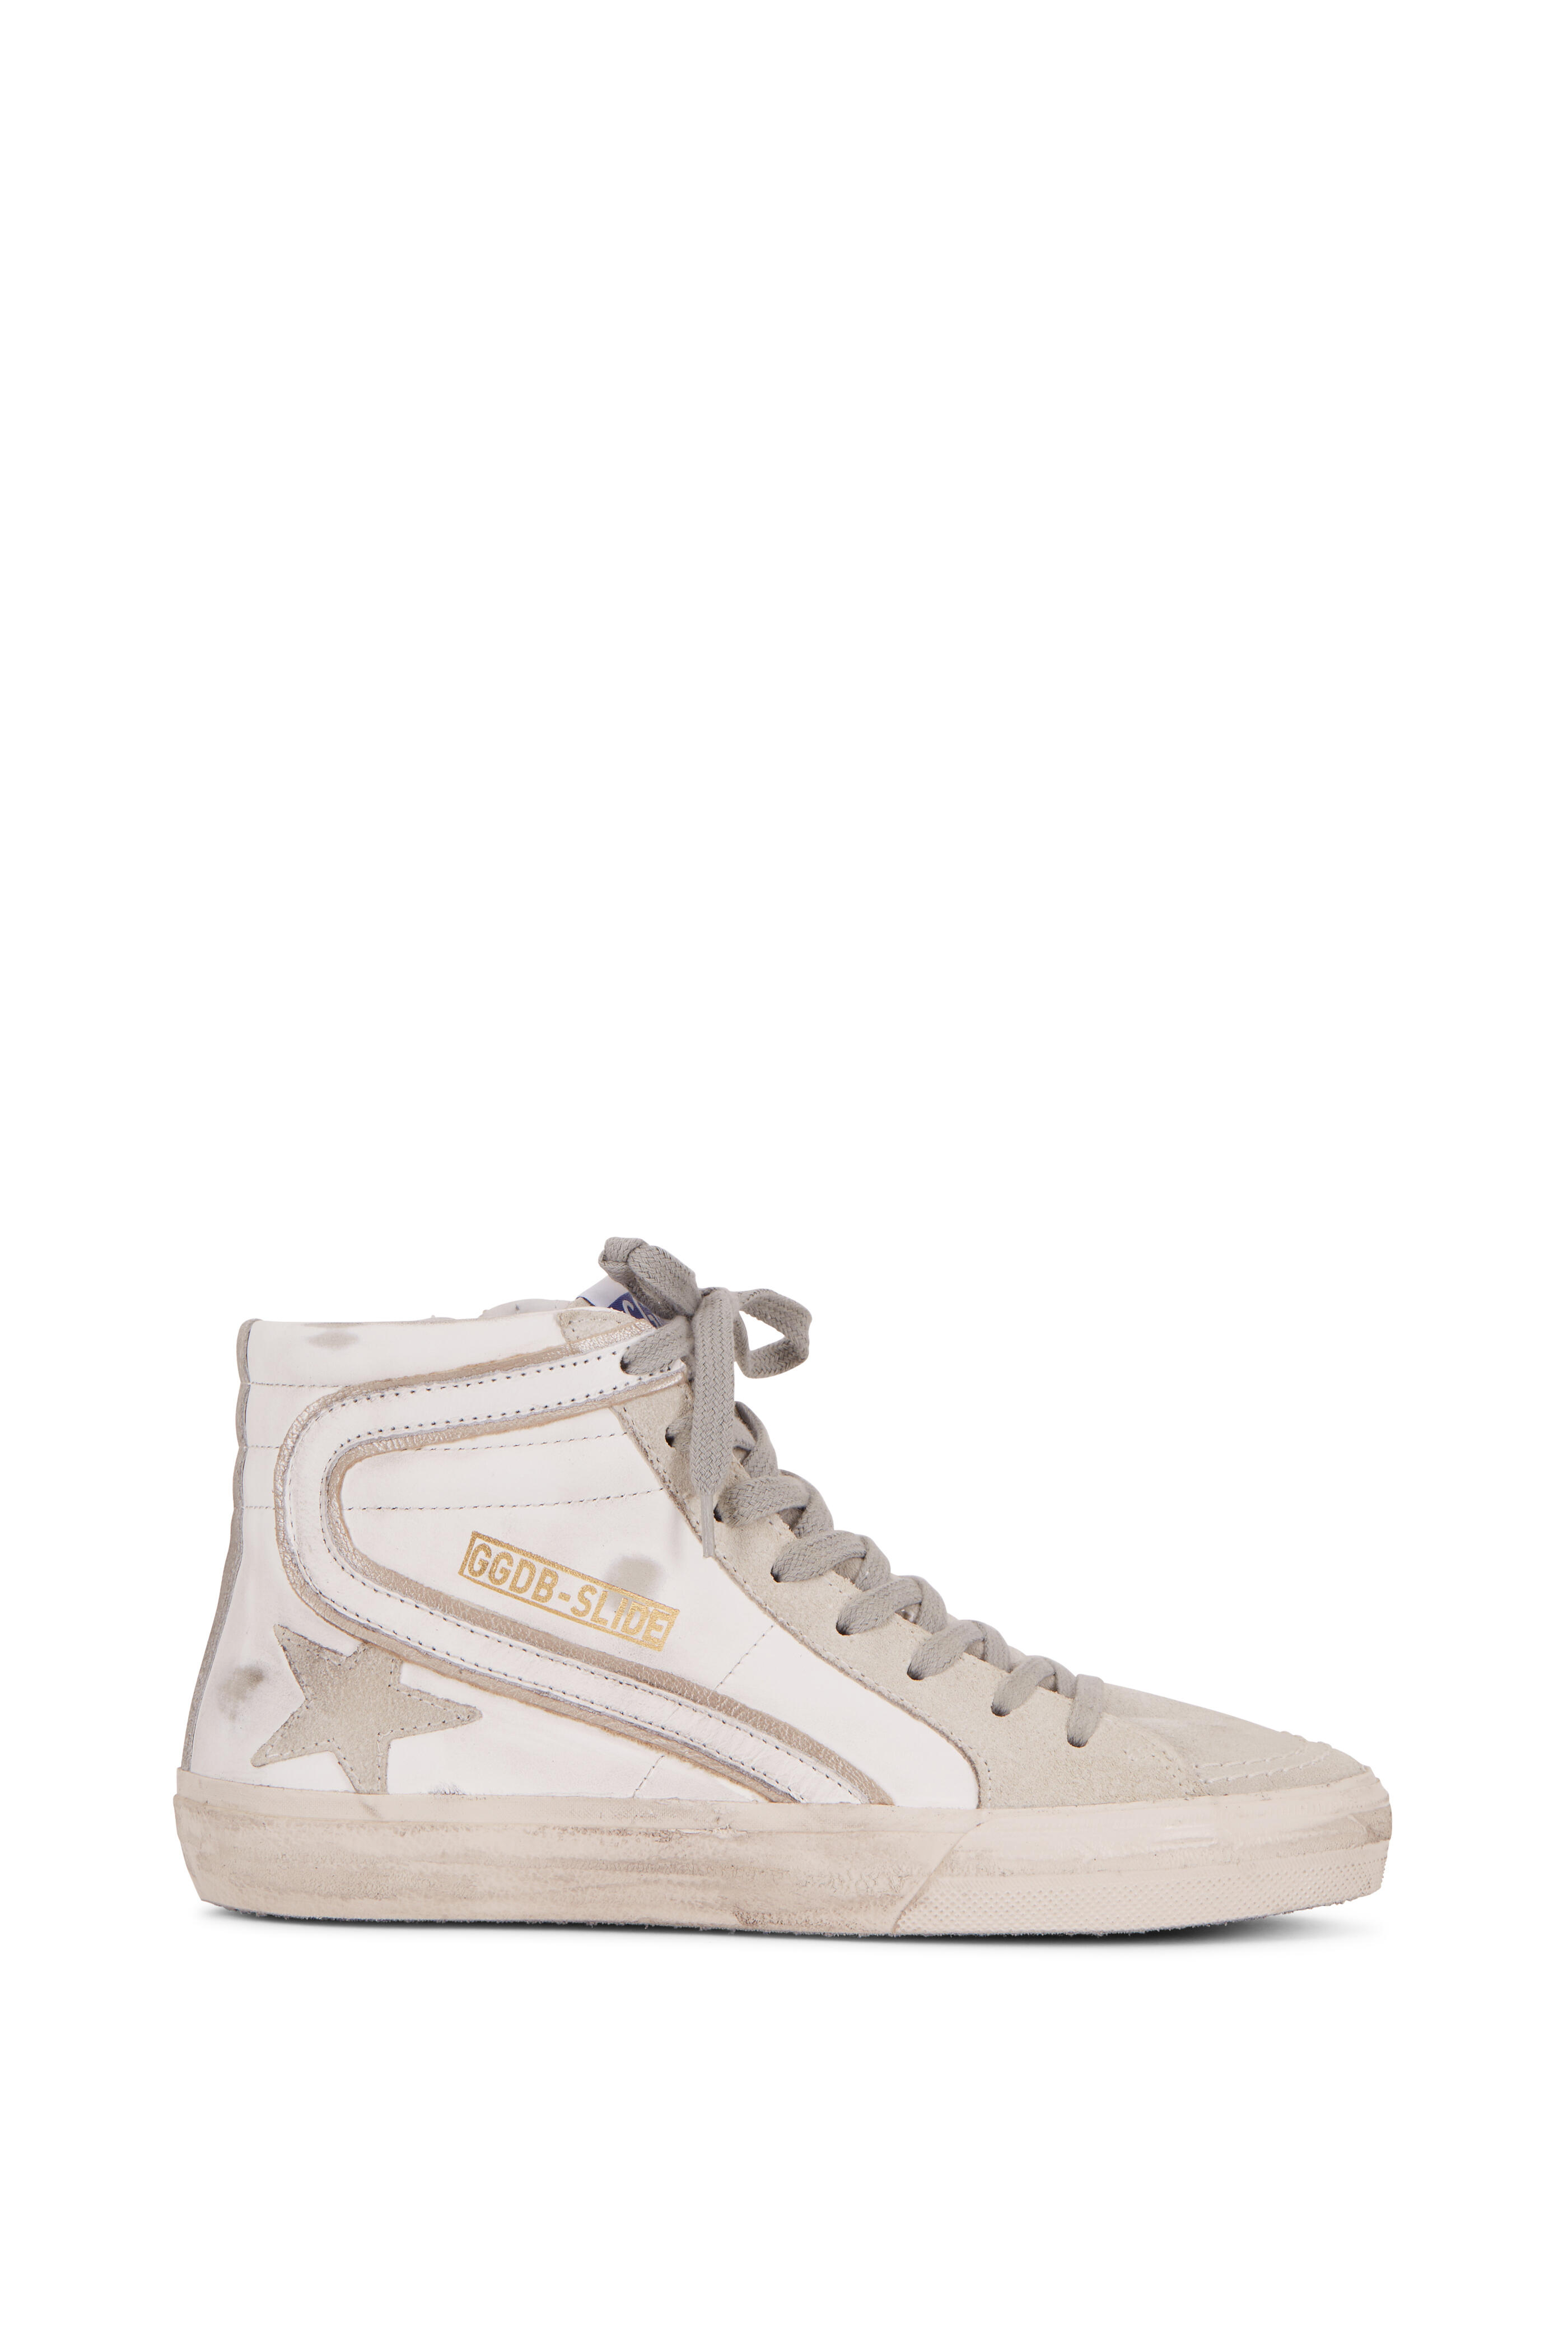 Golden Goose - Slide White & Gray Leather High Top Sneaker